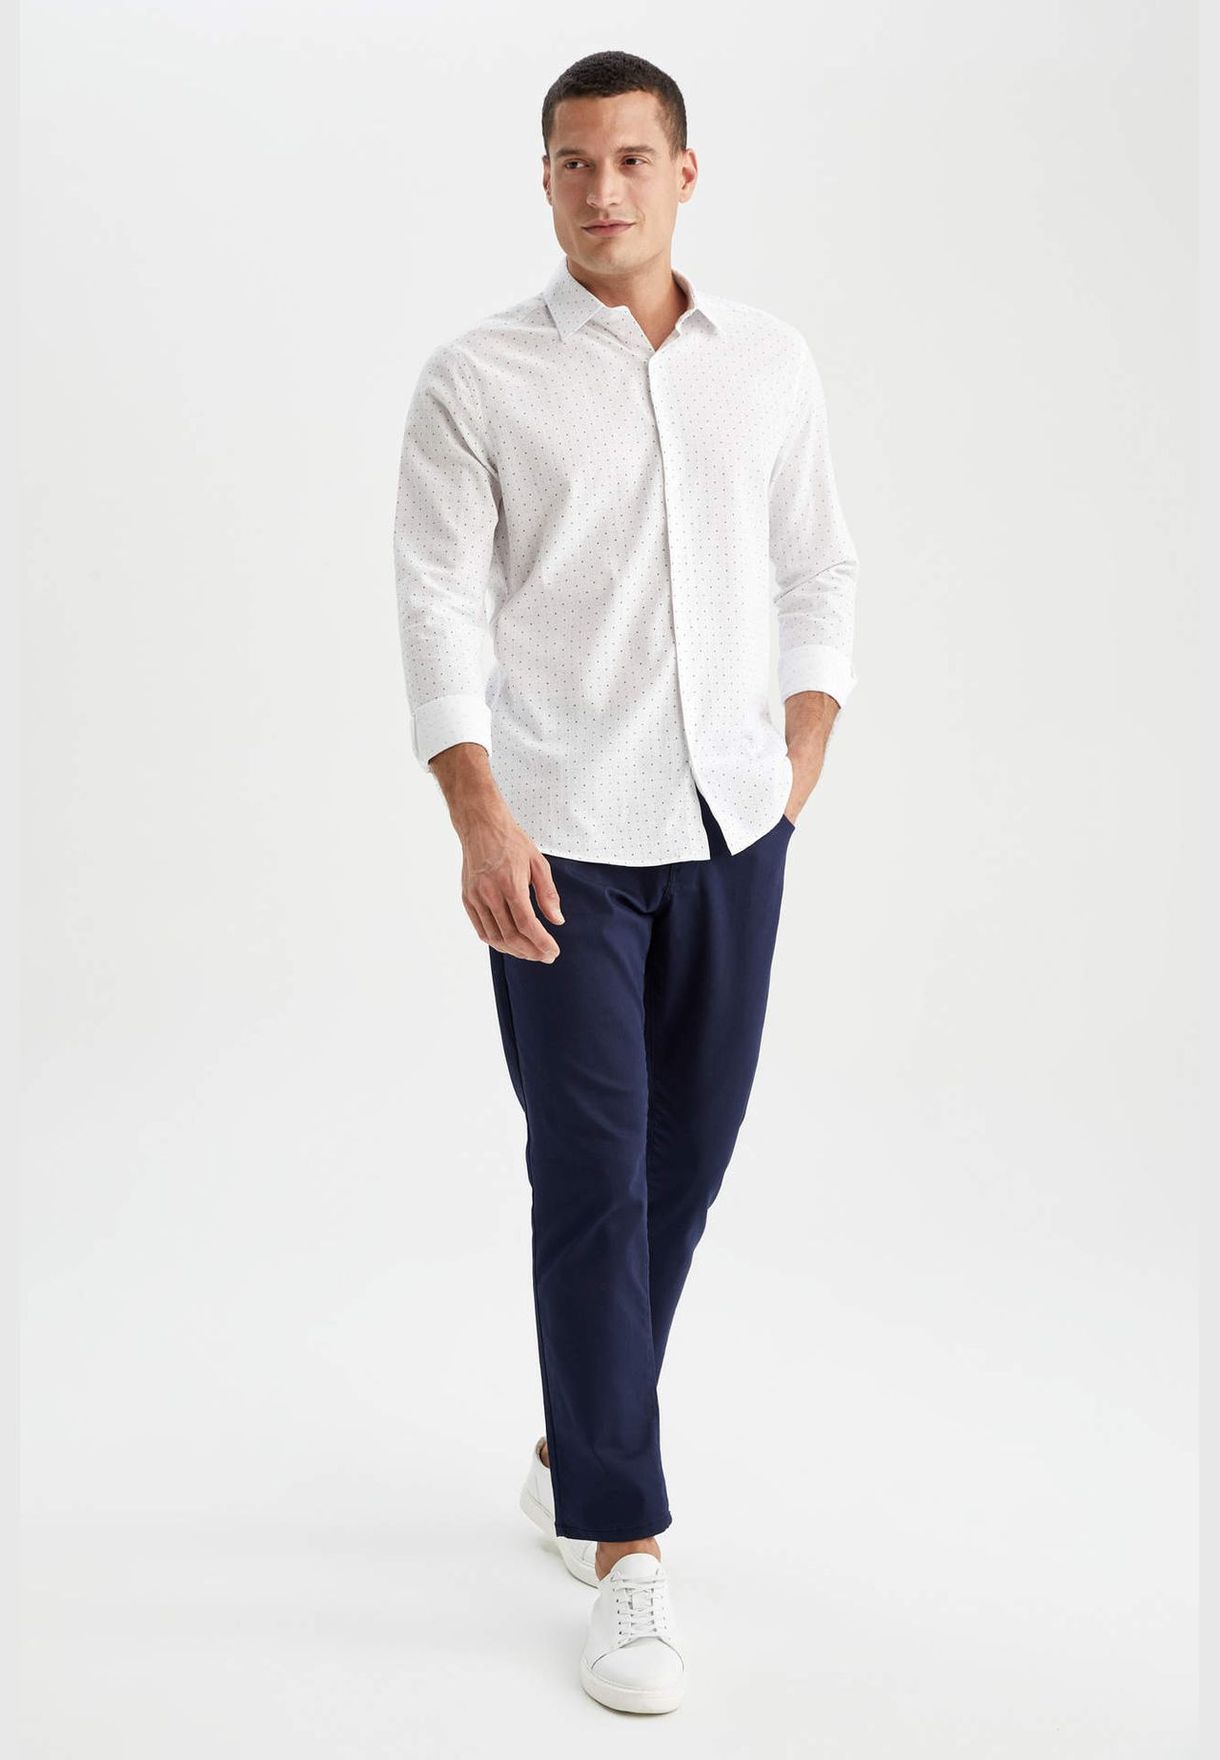 Man Modern Fit italian Neck Woven Top Long Sleeve Shirt